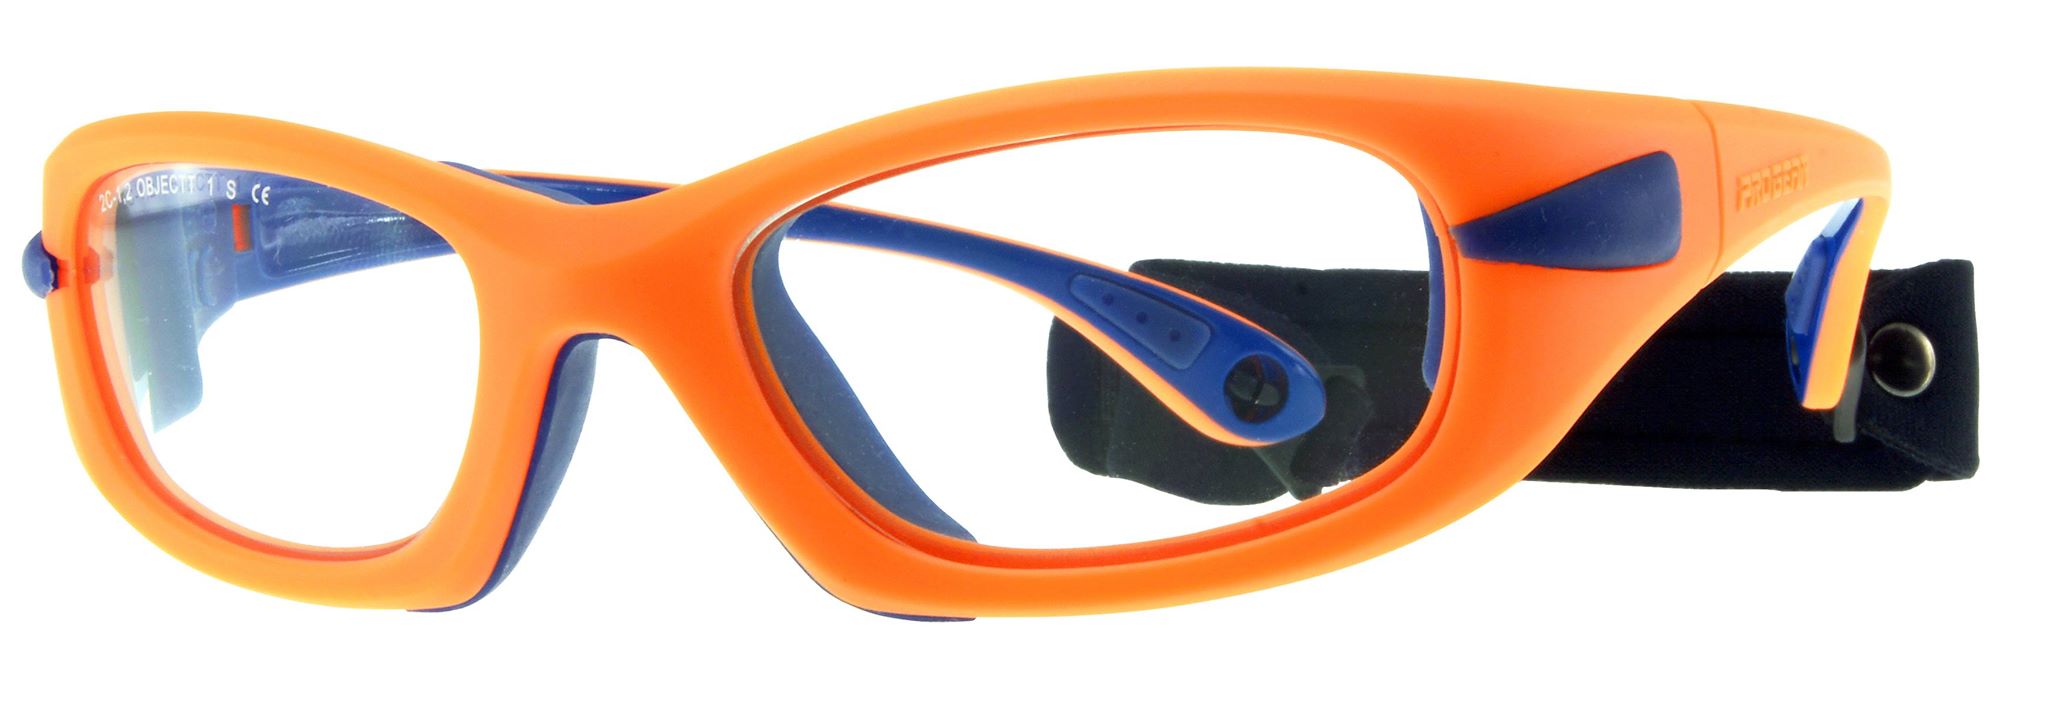 Progear Eyeguard Frame Orange